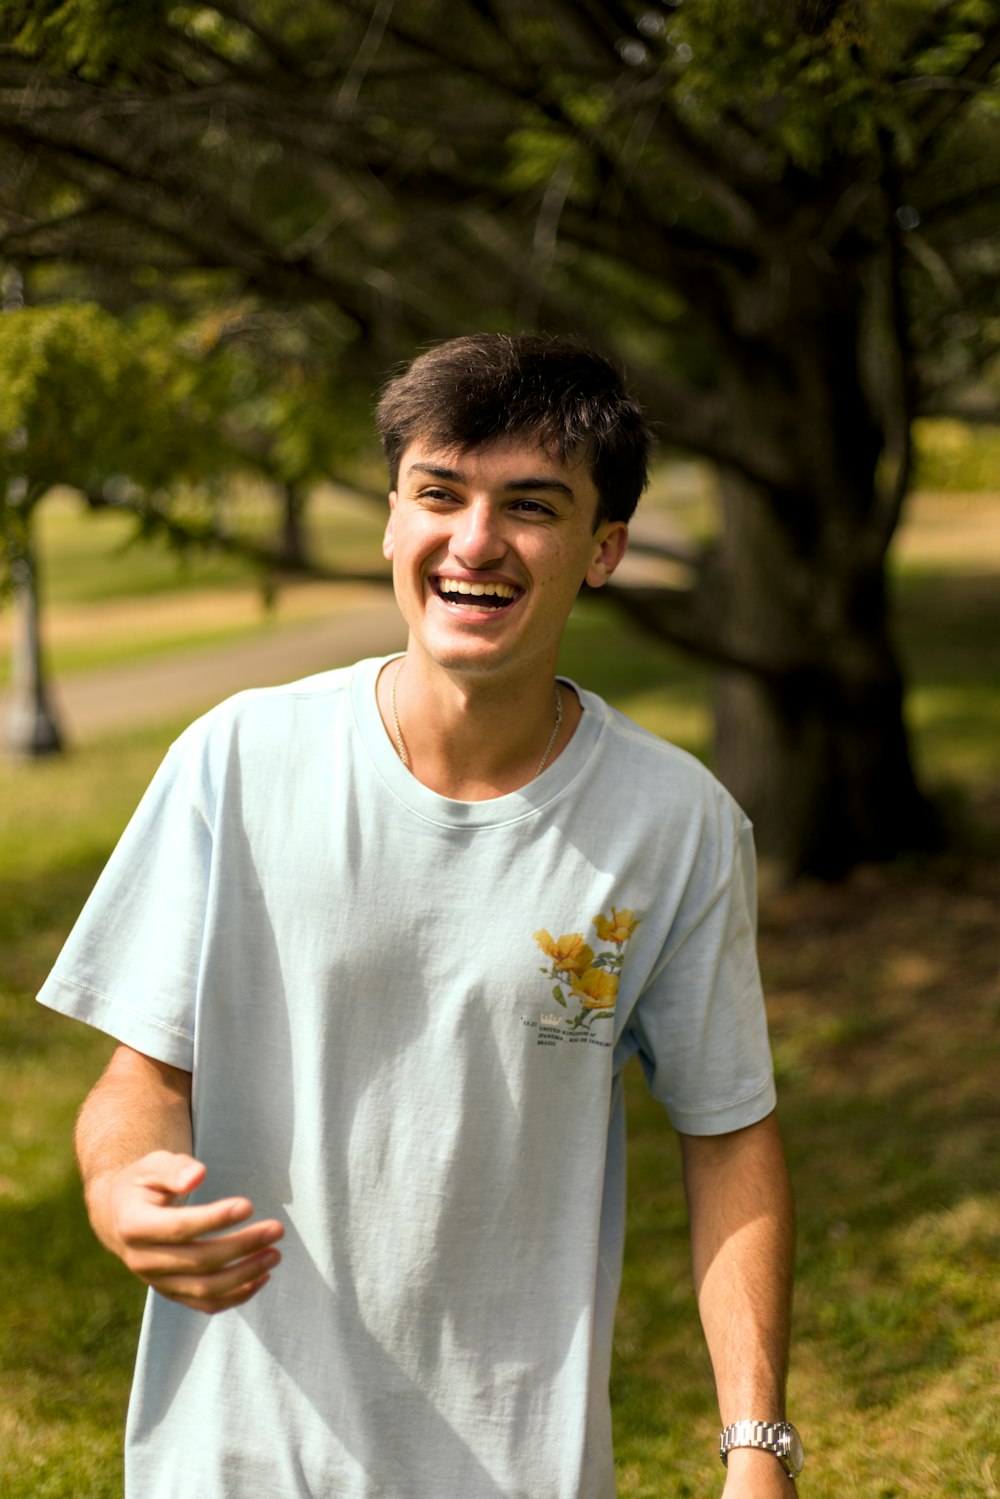 Um jovem sorri enquanto segura um frisbee